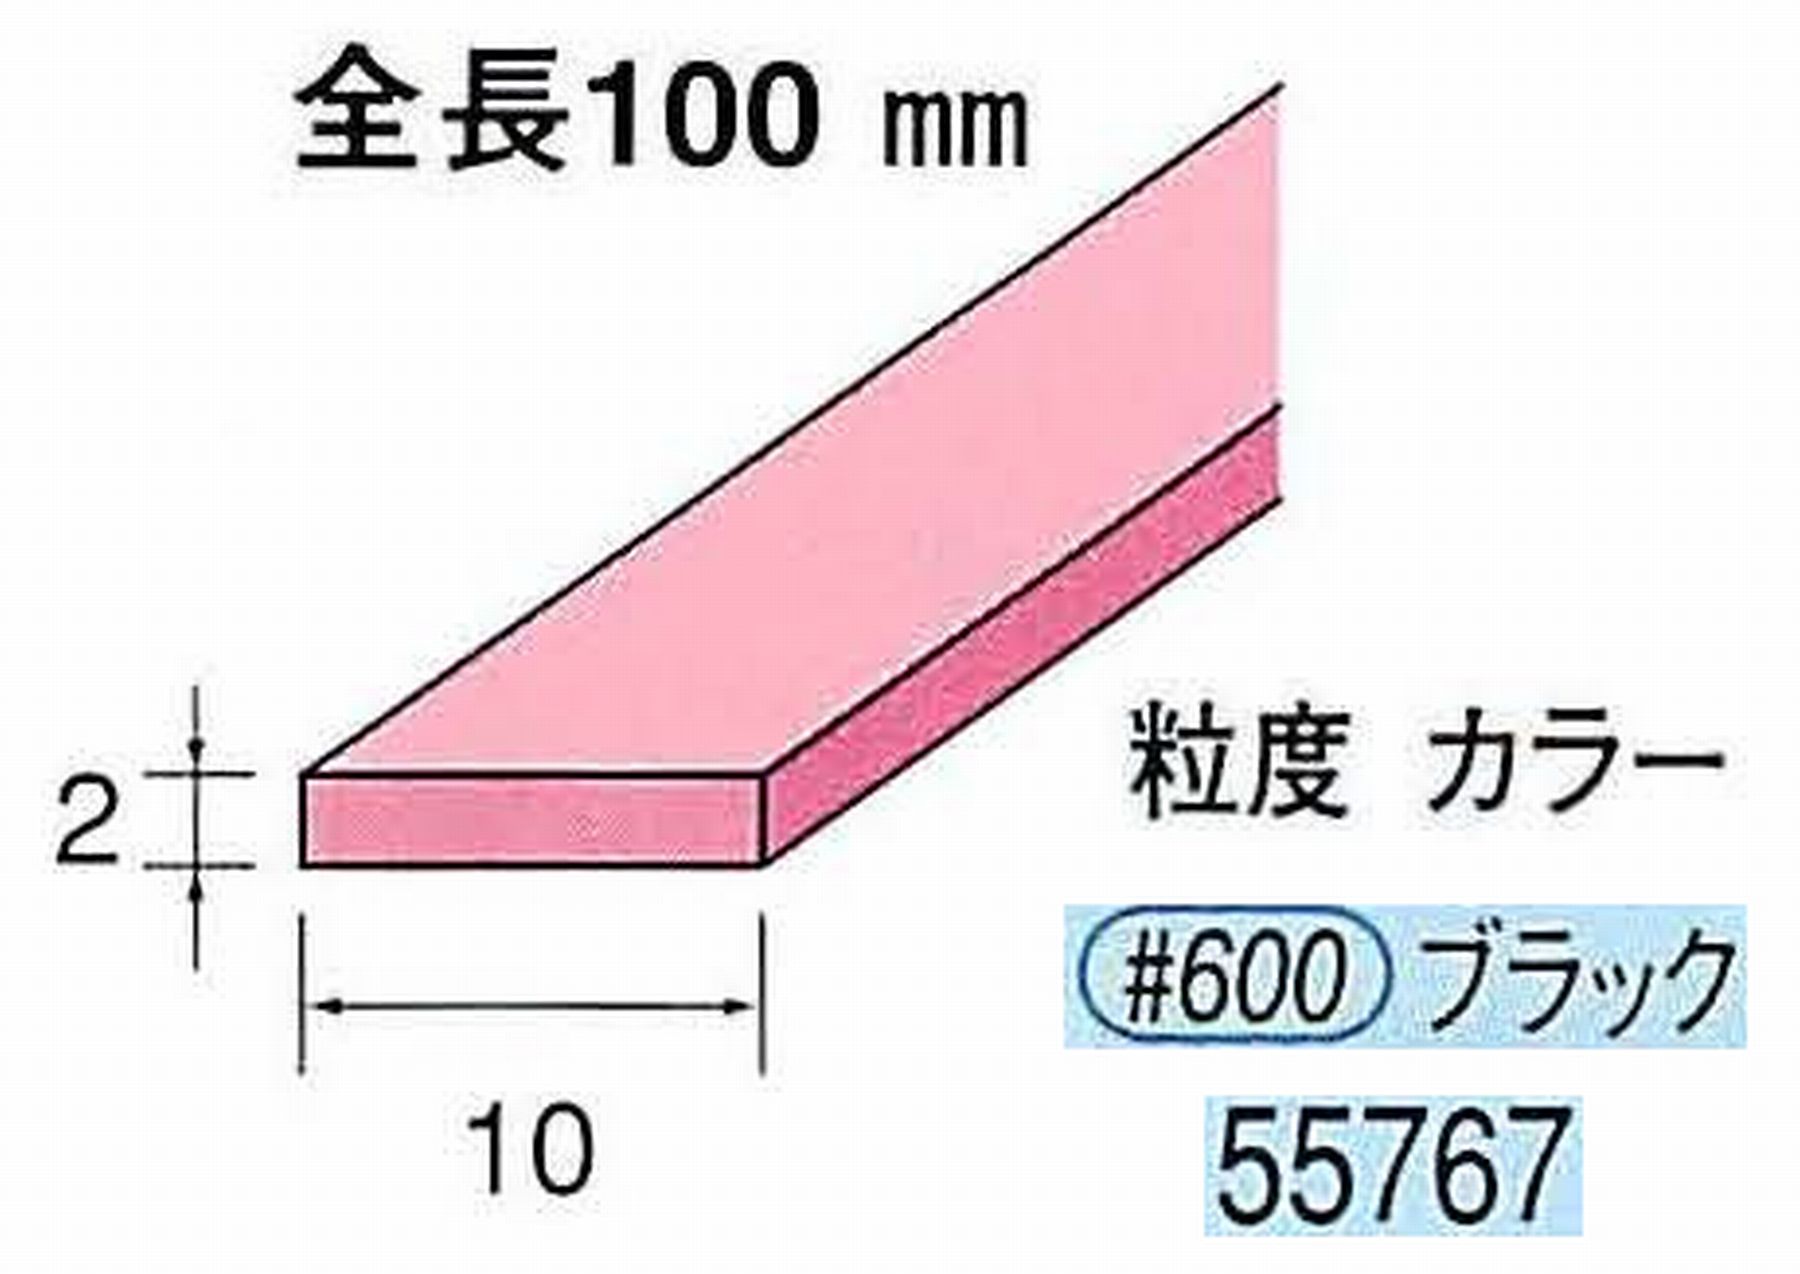 ナカニシ/NAKANISHI セラファイバー砥石 全長100mm ブラック 55767